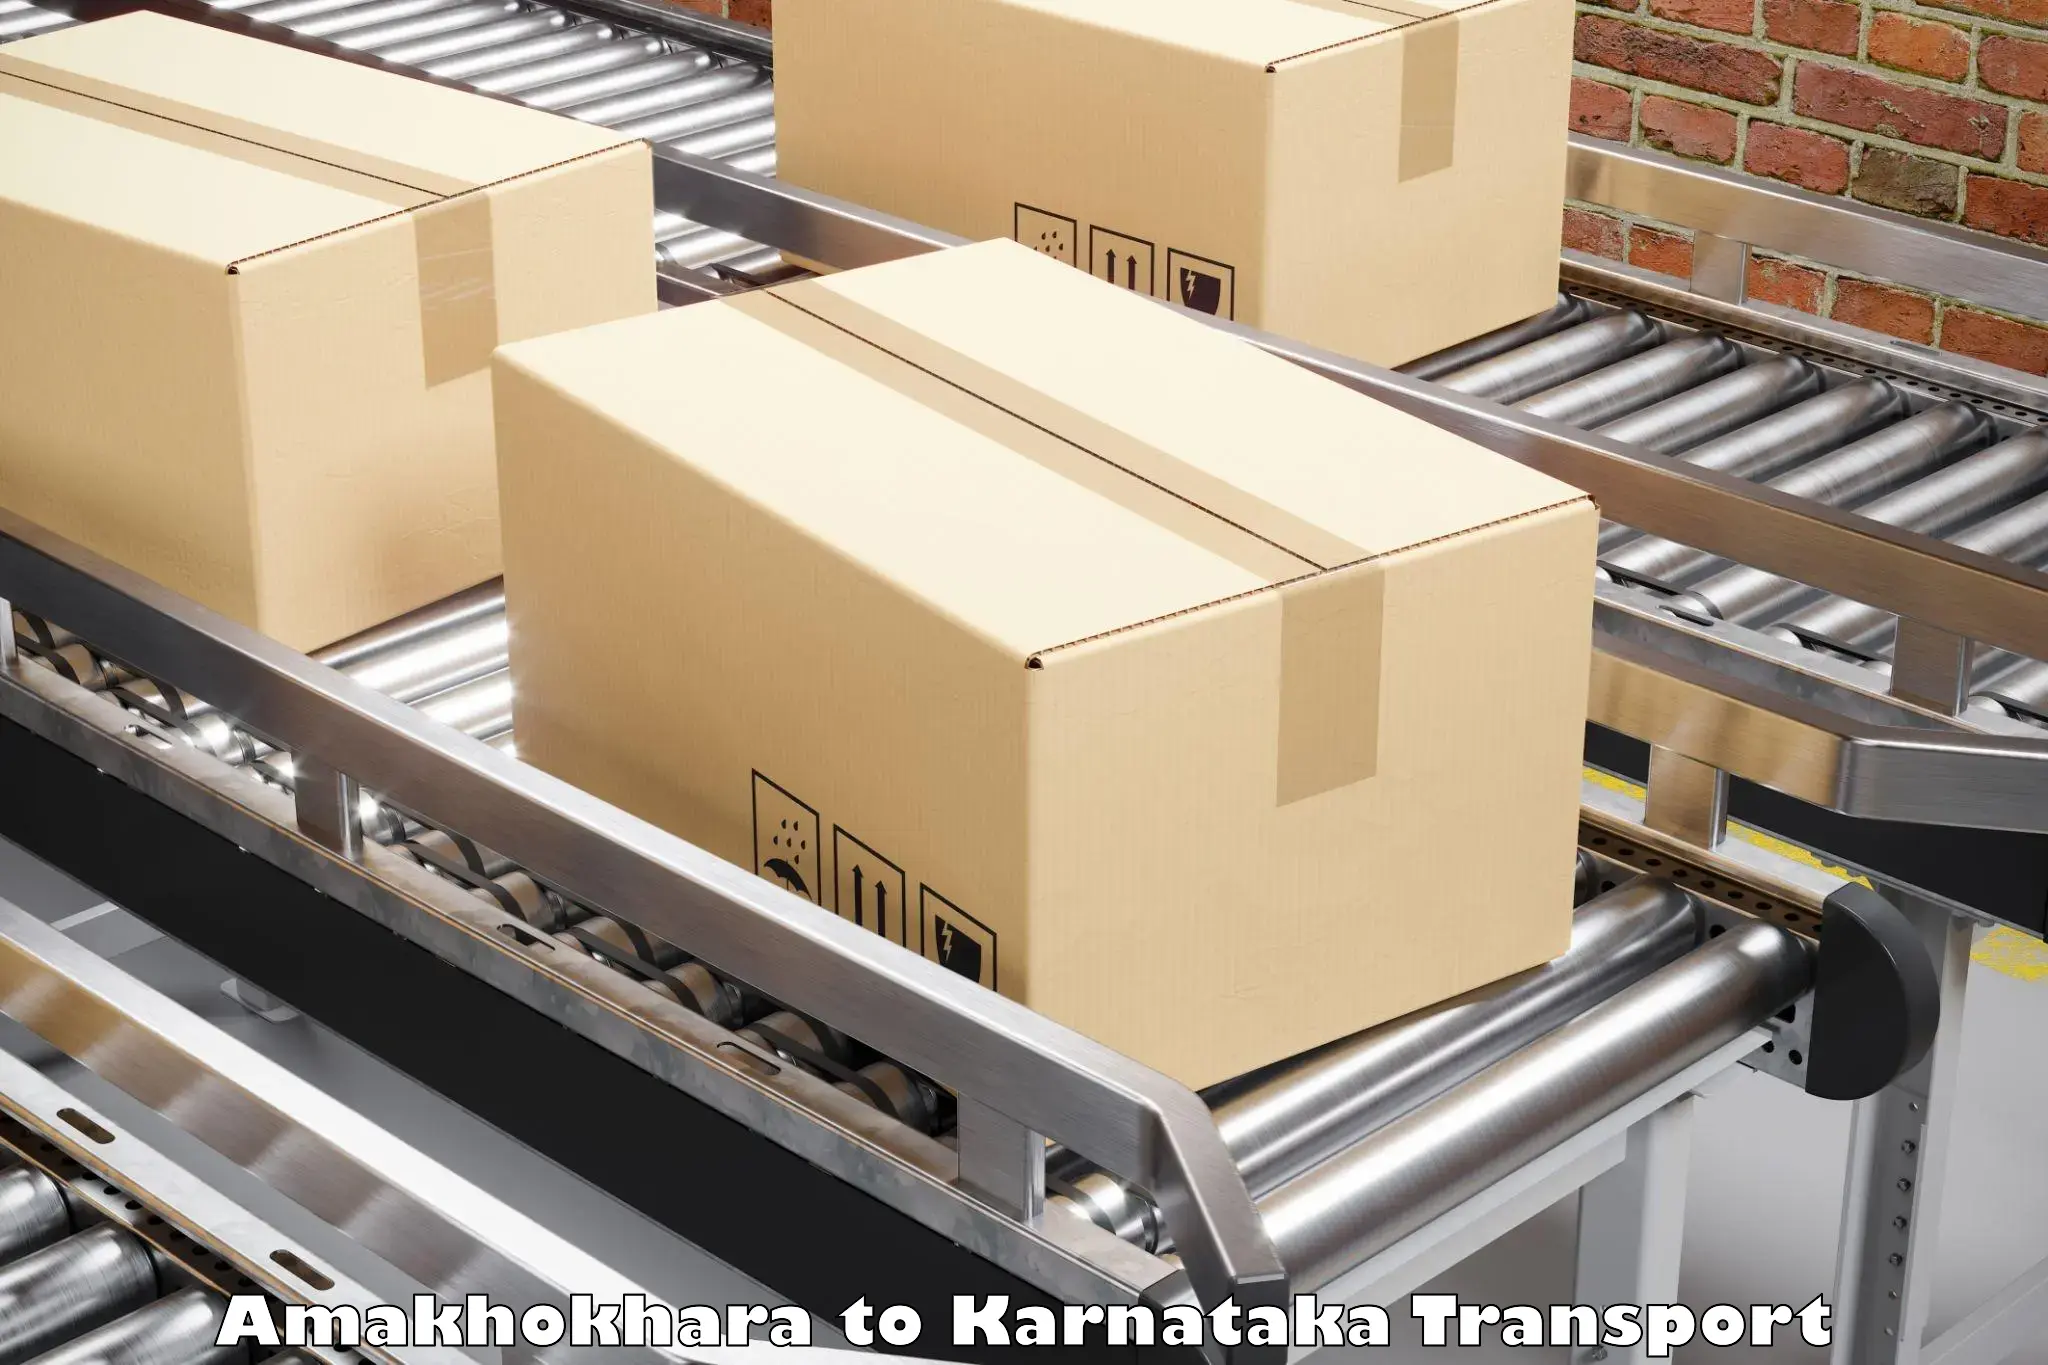 Cargo transport services Amakhokhara to Saundatti Yallamma